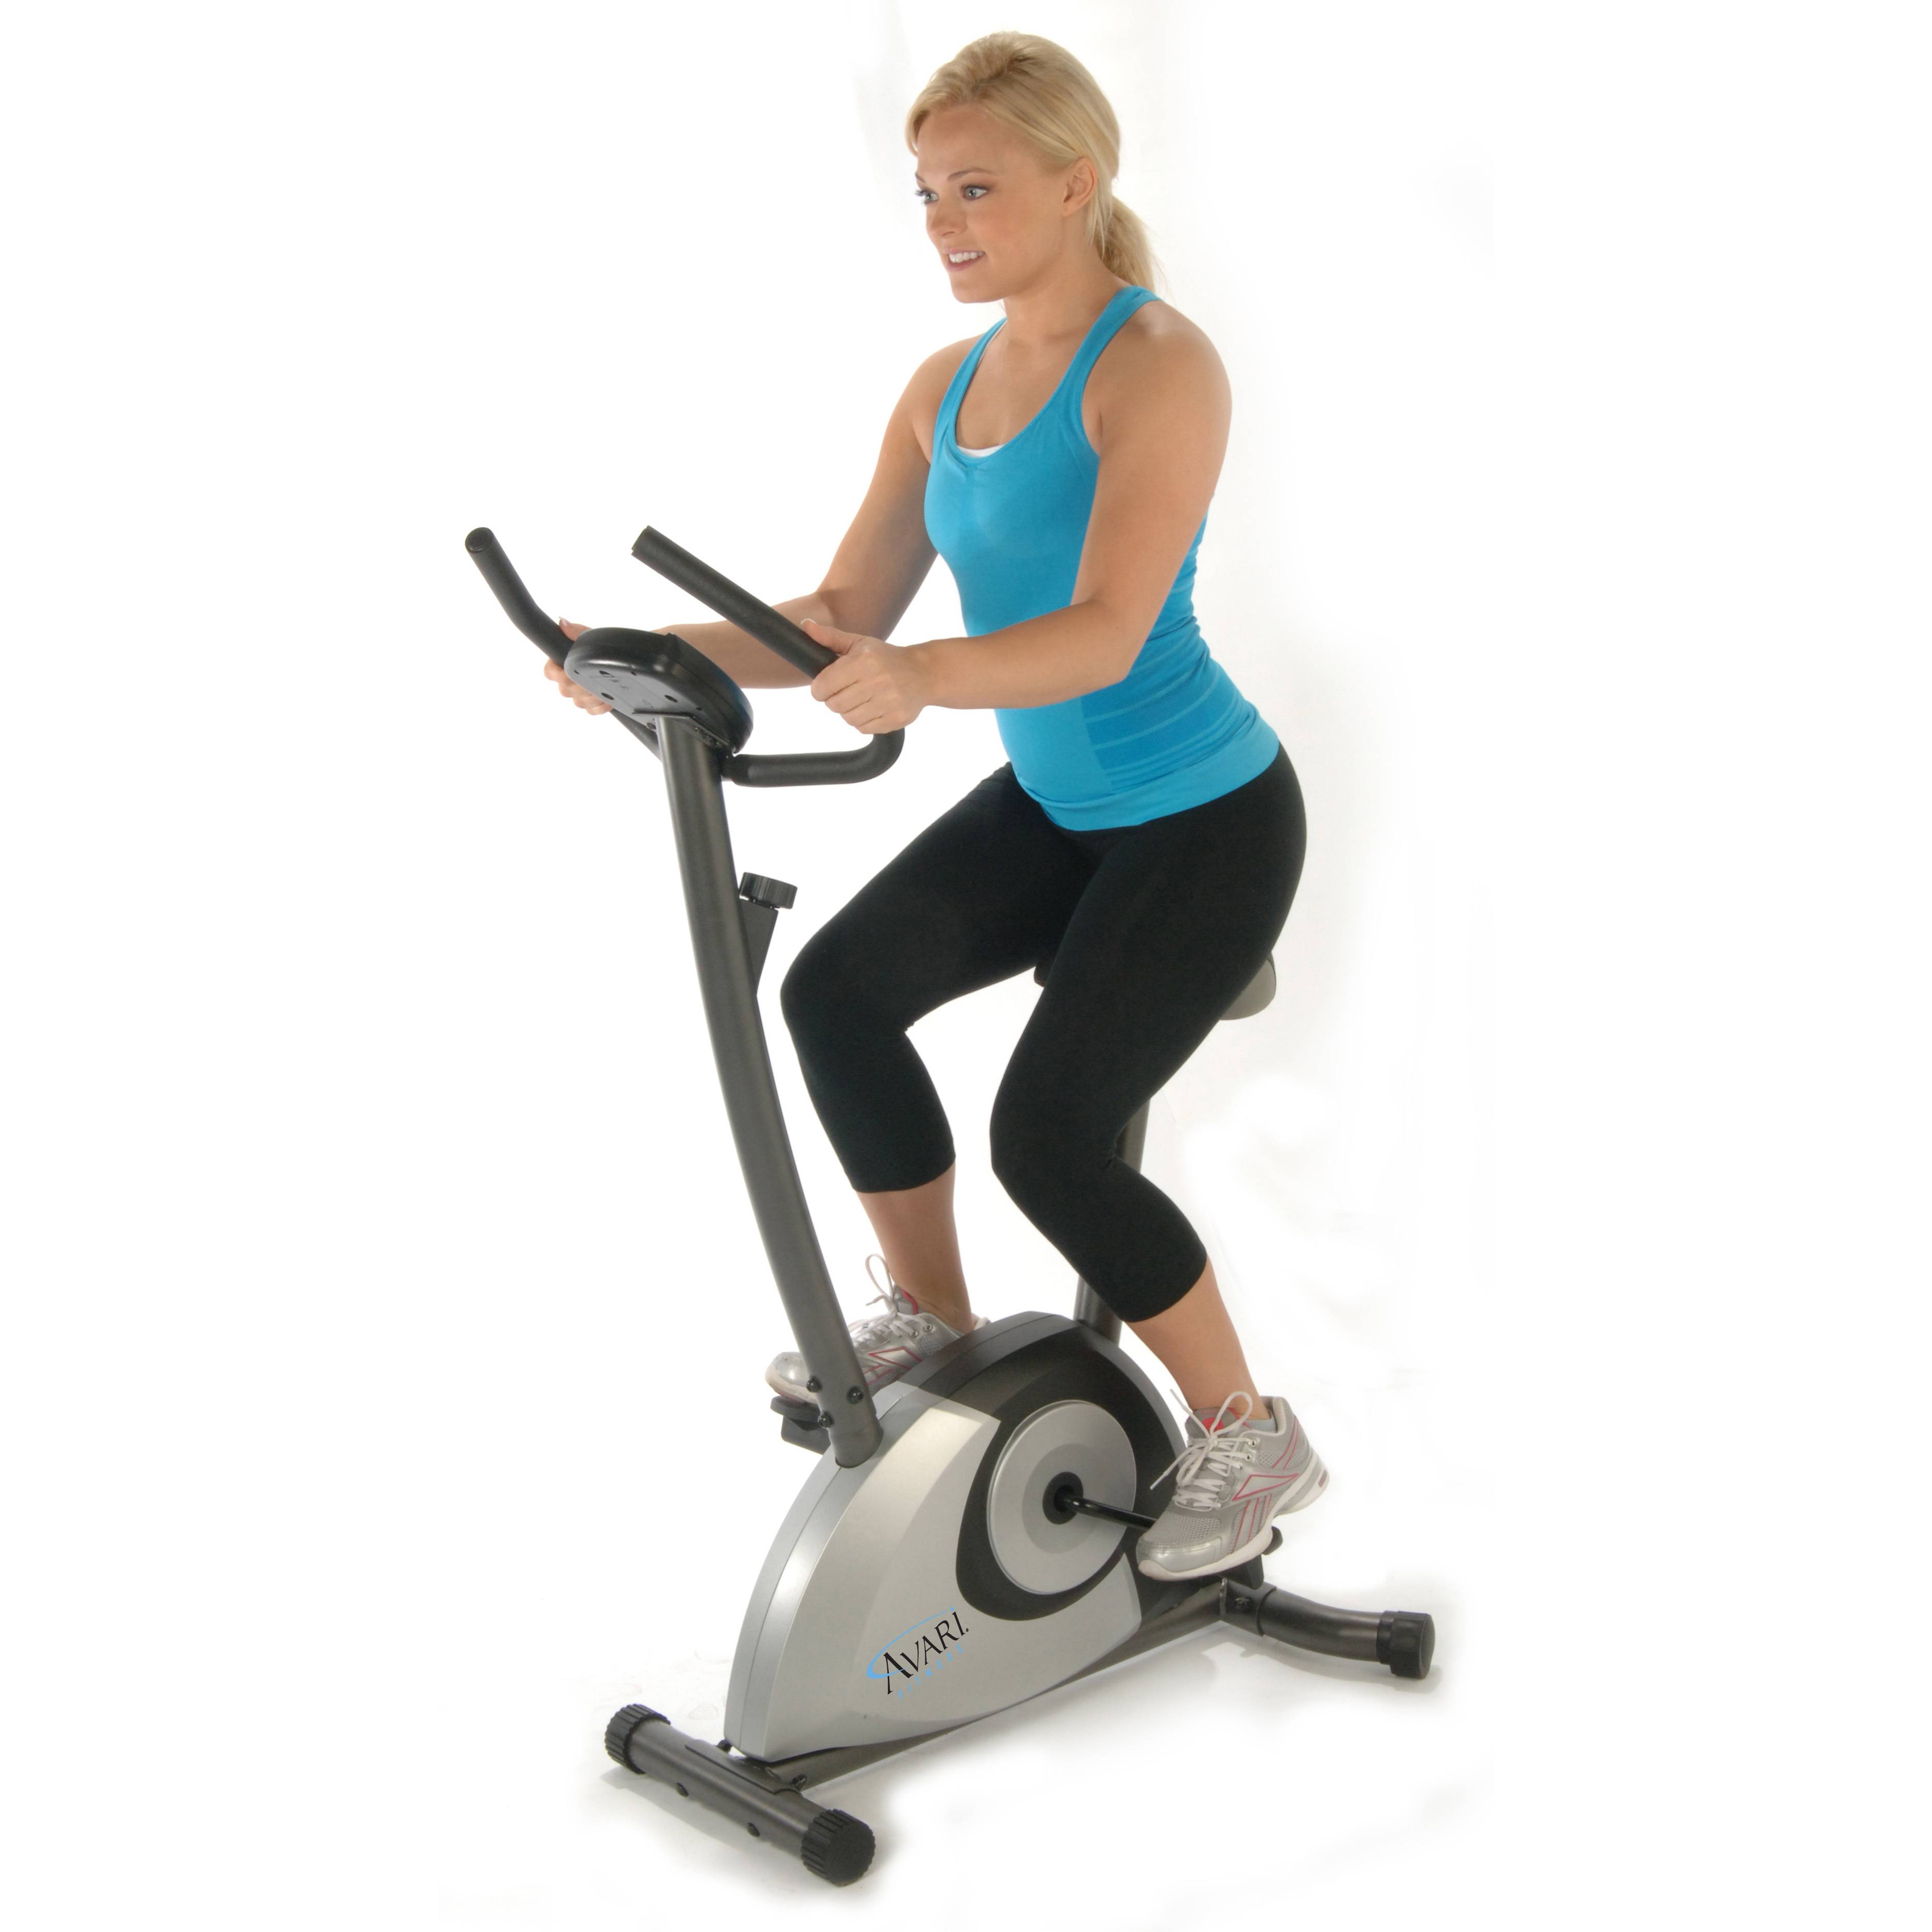 Велотренажер для похудения: программа тренировок, польза, отзывы - минус 10 кг легко - похудейкина